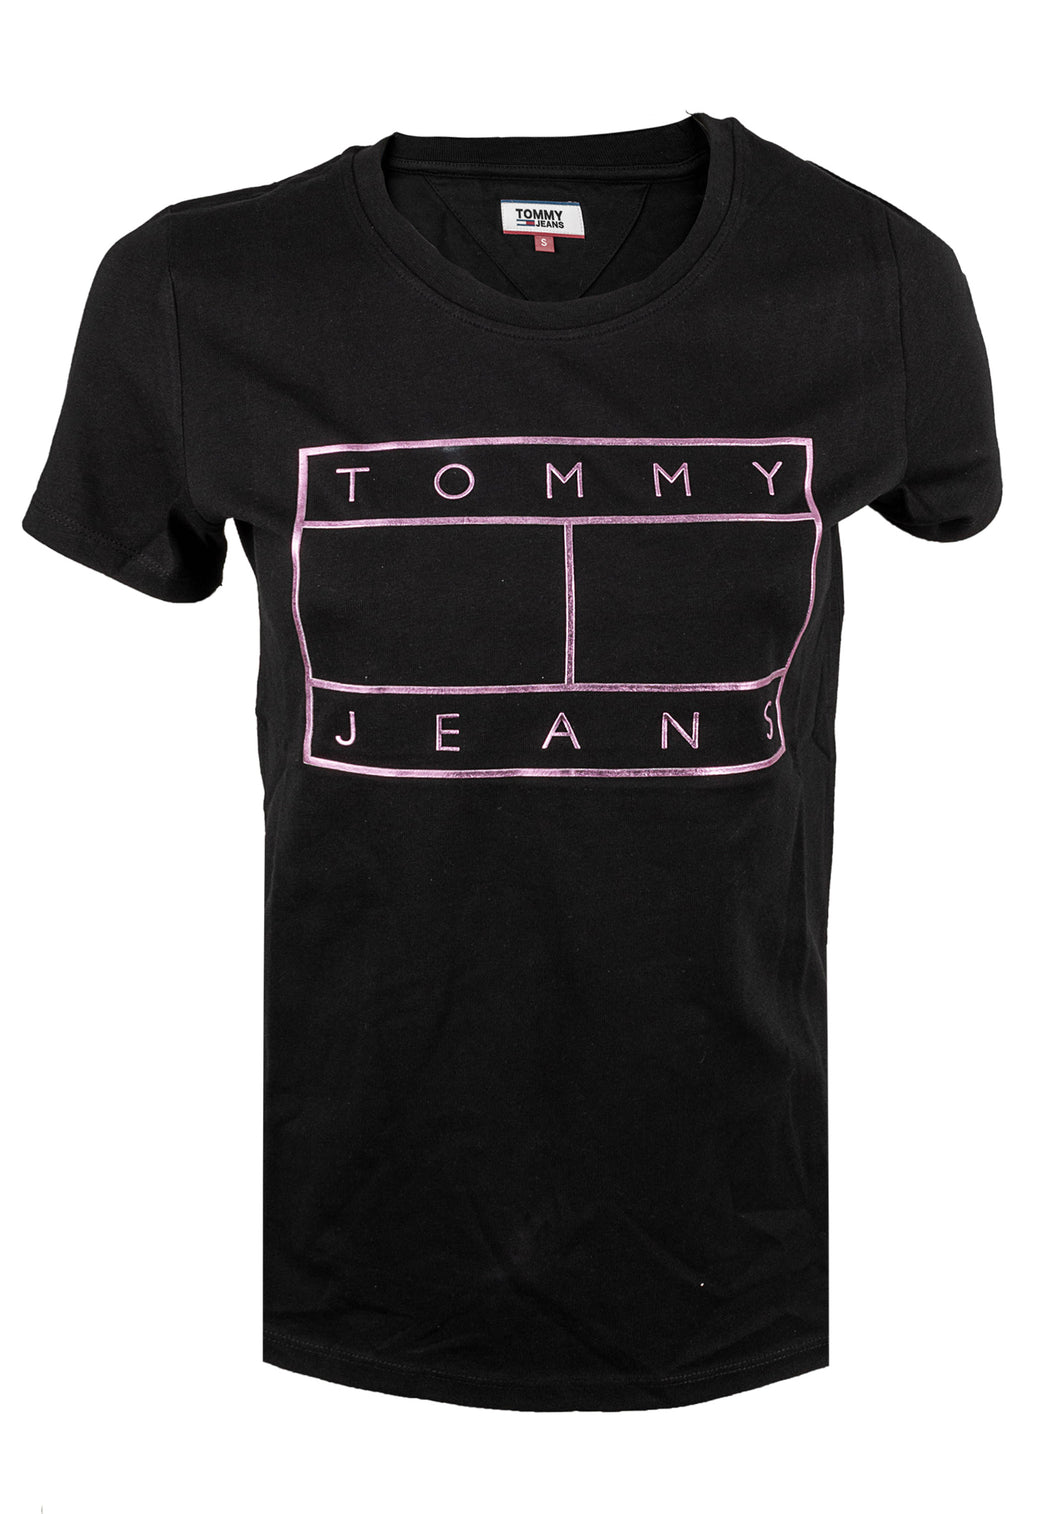 Tommy Hilfiger Herren T-Shirt | Frontprint TEA